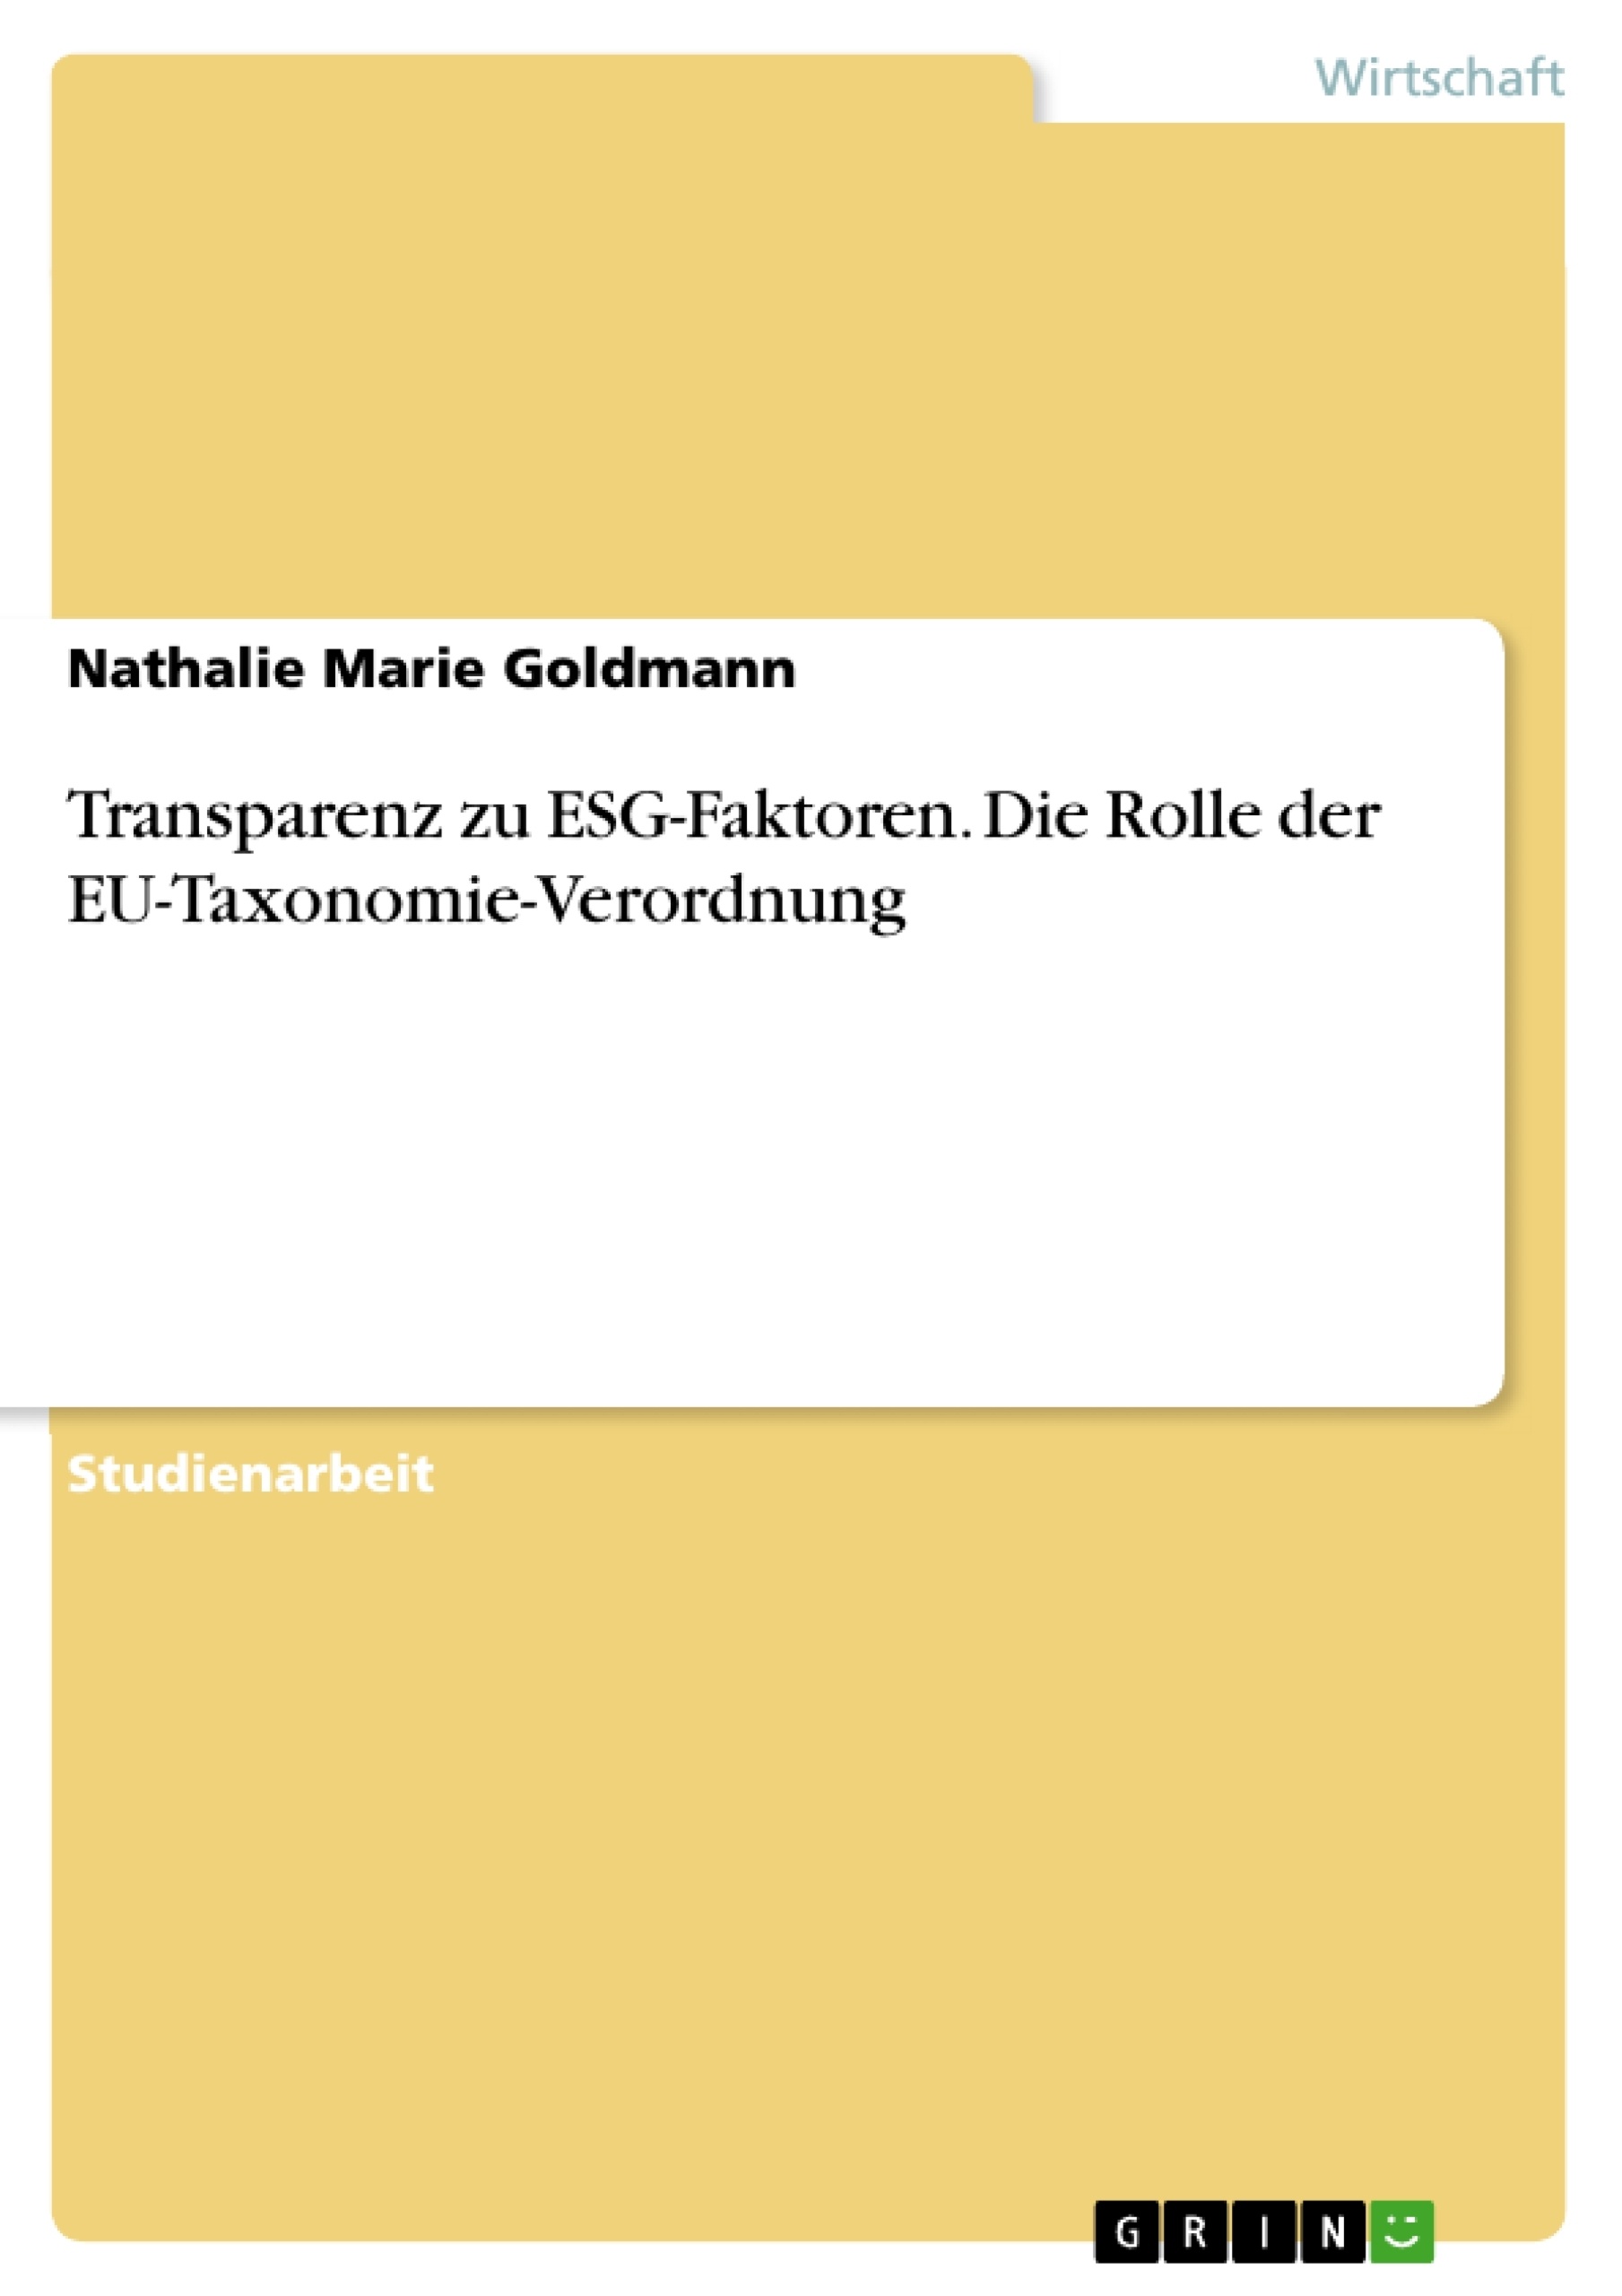 Título: Transparenz zu ESG-Faktoren. Die Rolle der EU-Taxonomie-Verordnung